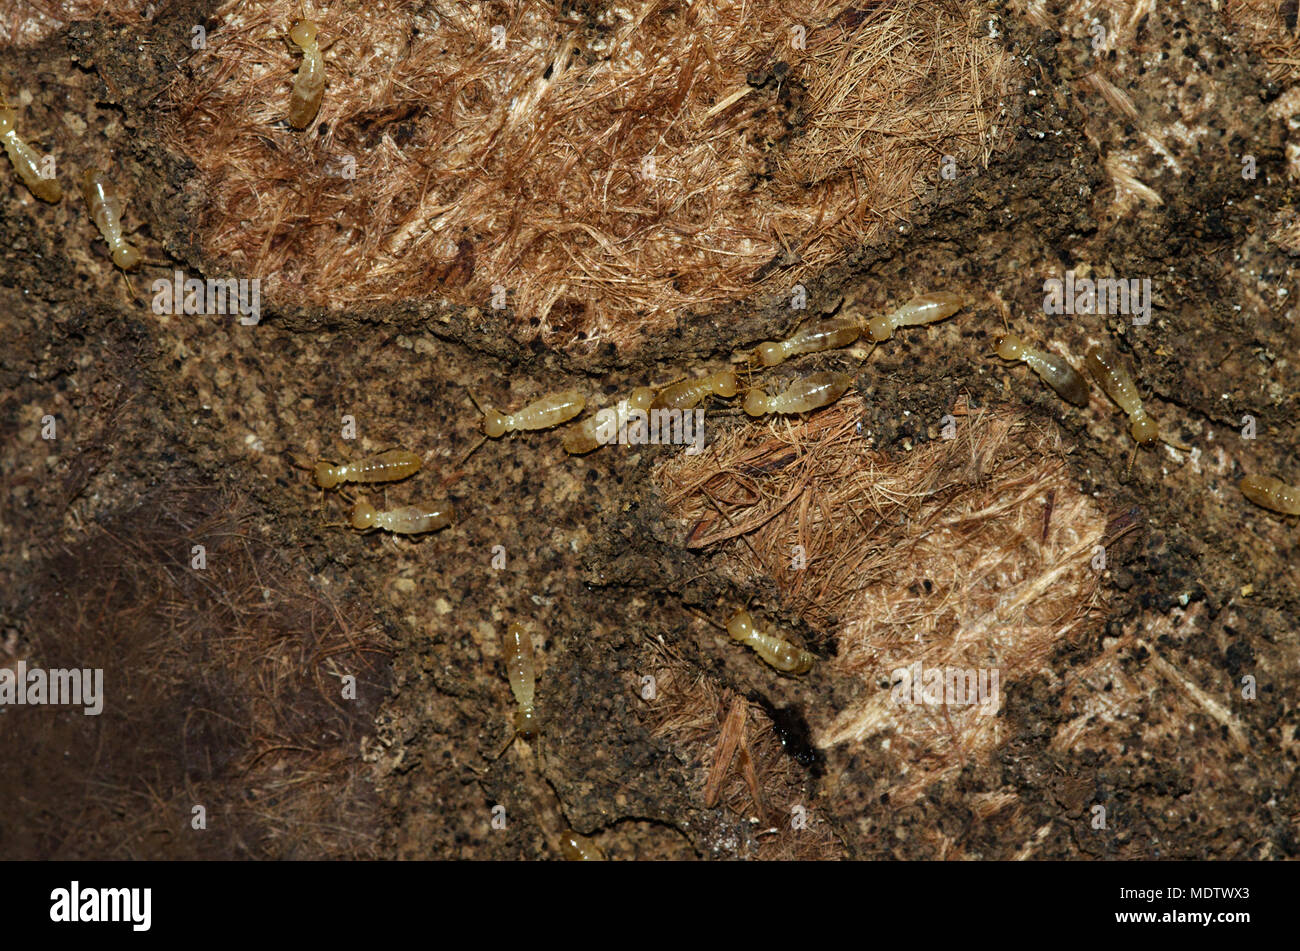 Lavoratori Termite di Kalotermes flavicollis specie tunneling di un vecchio e la moquette marcio. Morbida e di colore pallido corpo. Foto Stock